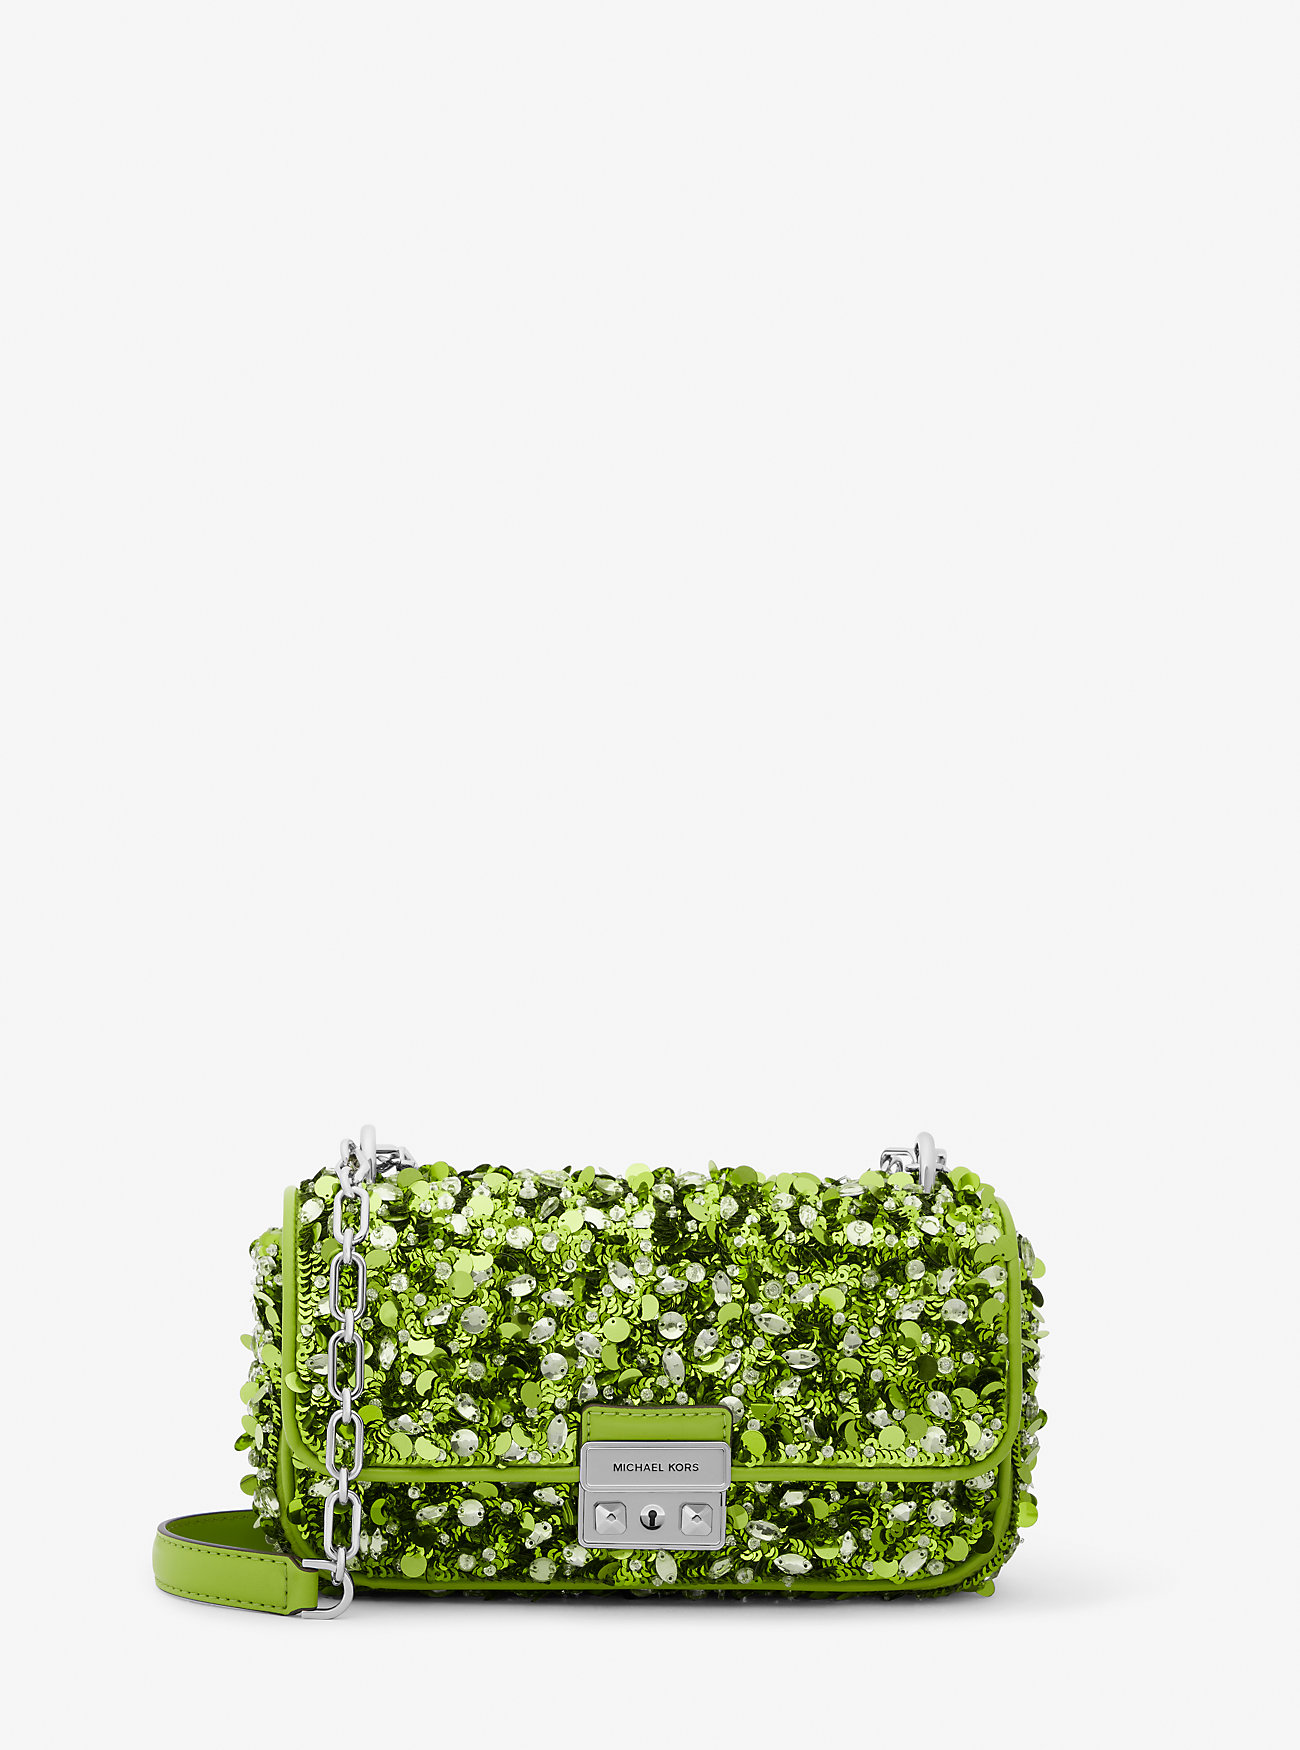 Michaelkors Limited-Edition Tribeca Small Hand-Embellished Shoulder Bag